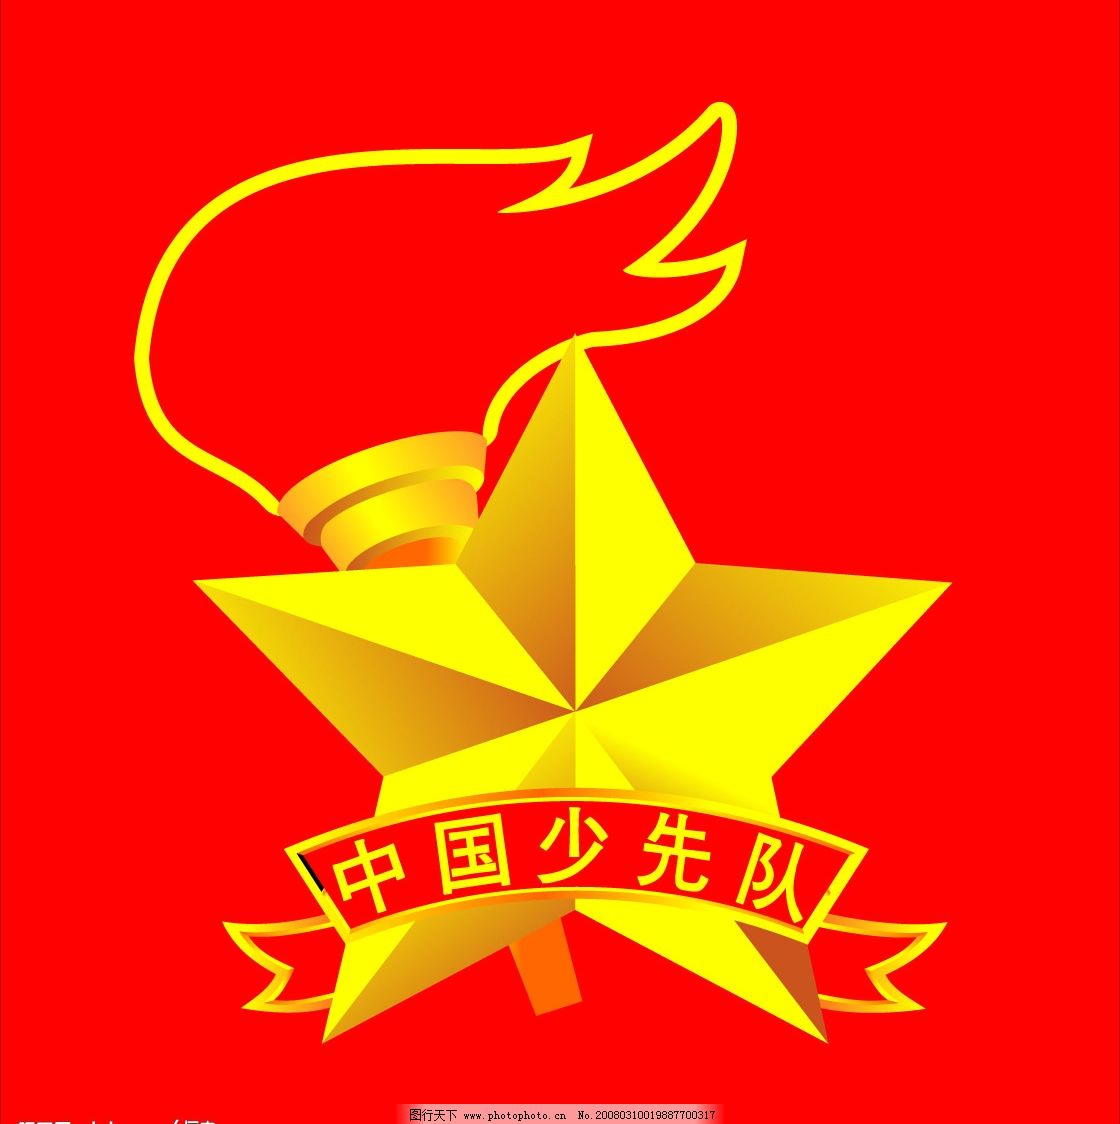 梅县队队徽图片素材-编号10327395-图行天下